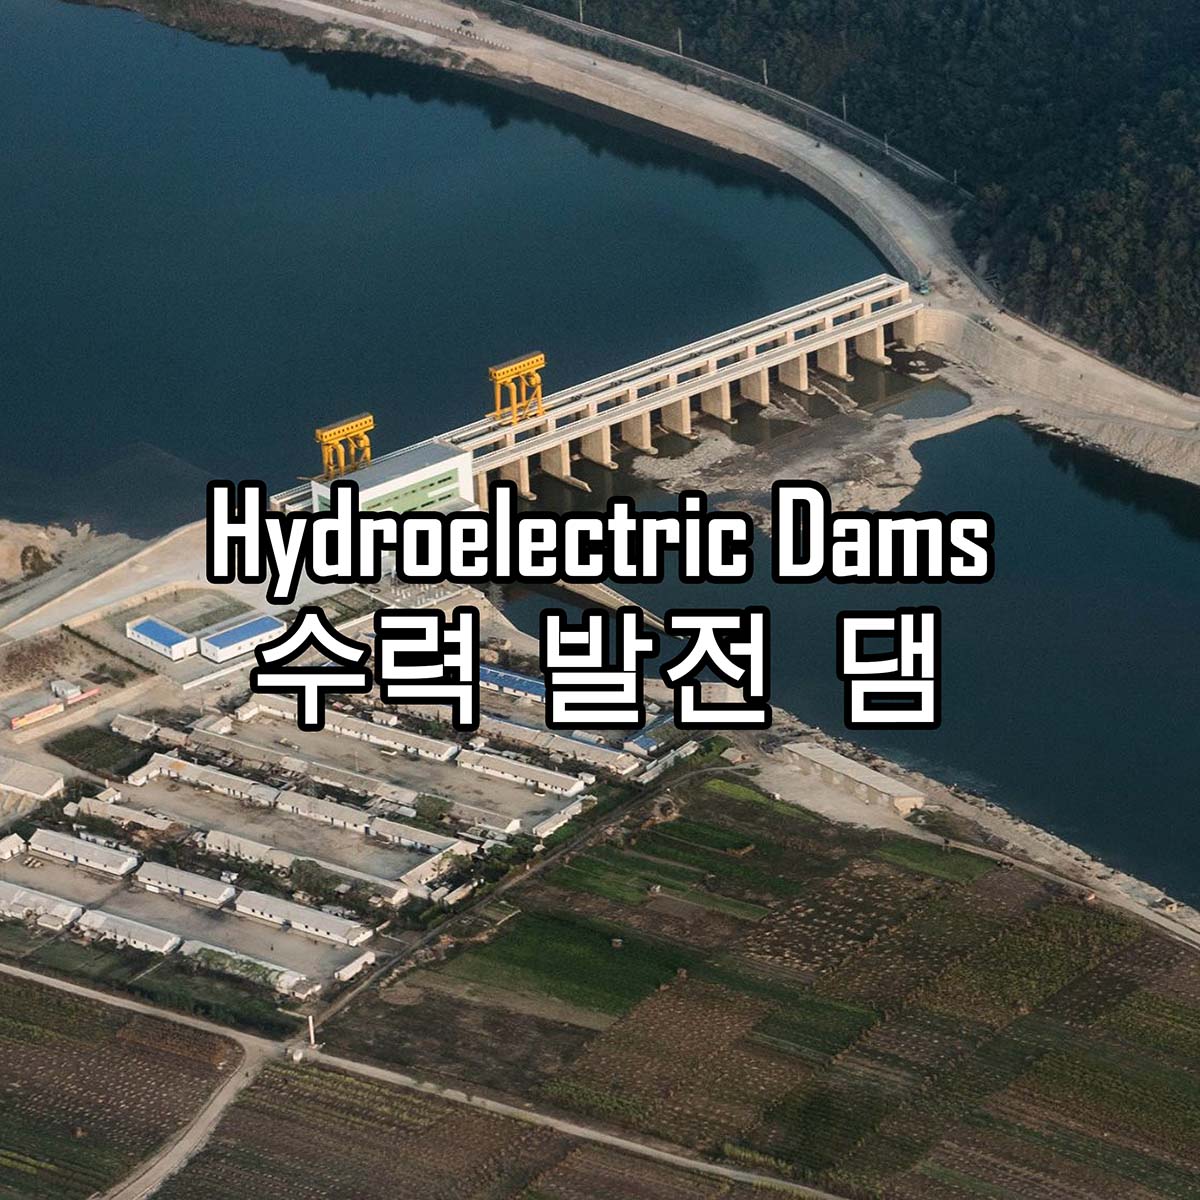 North Korean Hydroelectric Dams